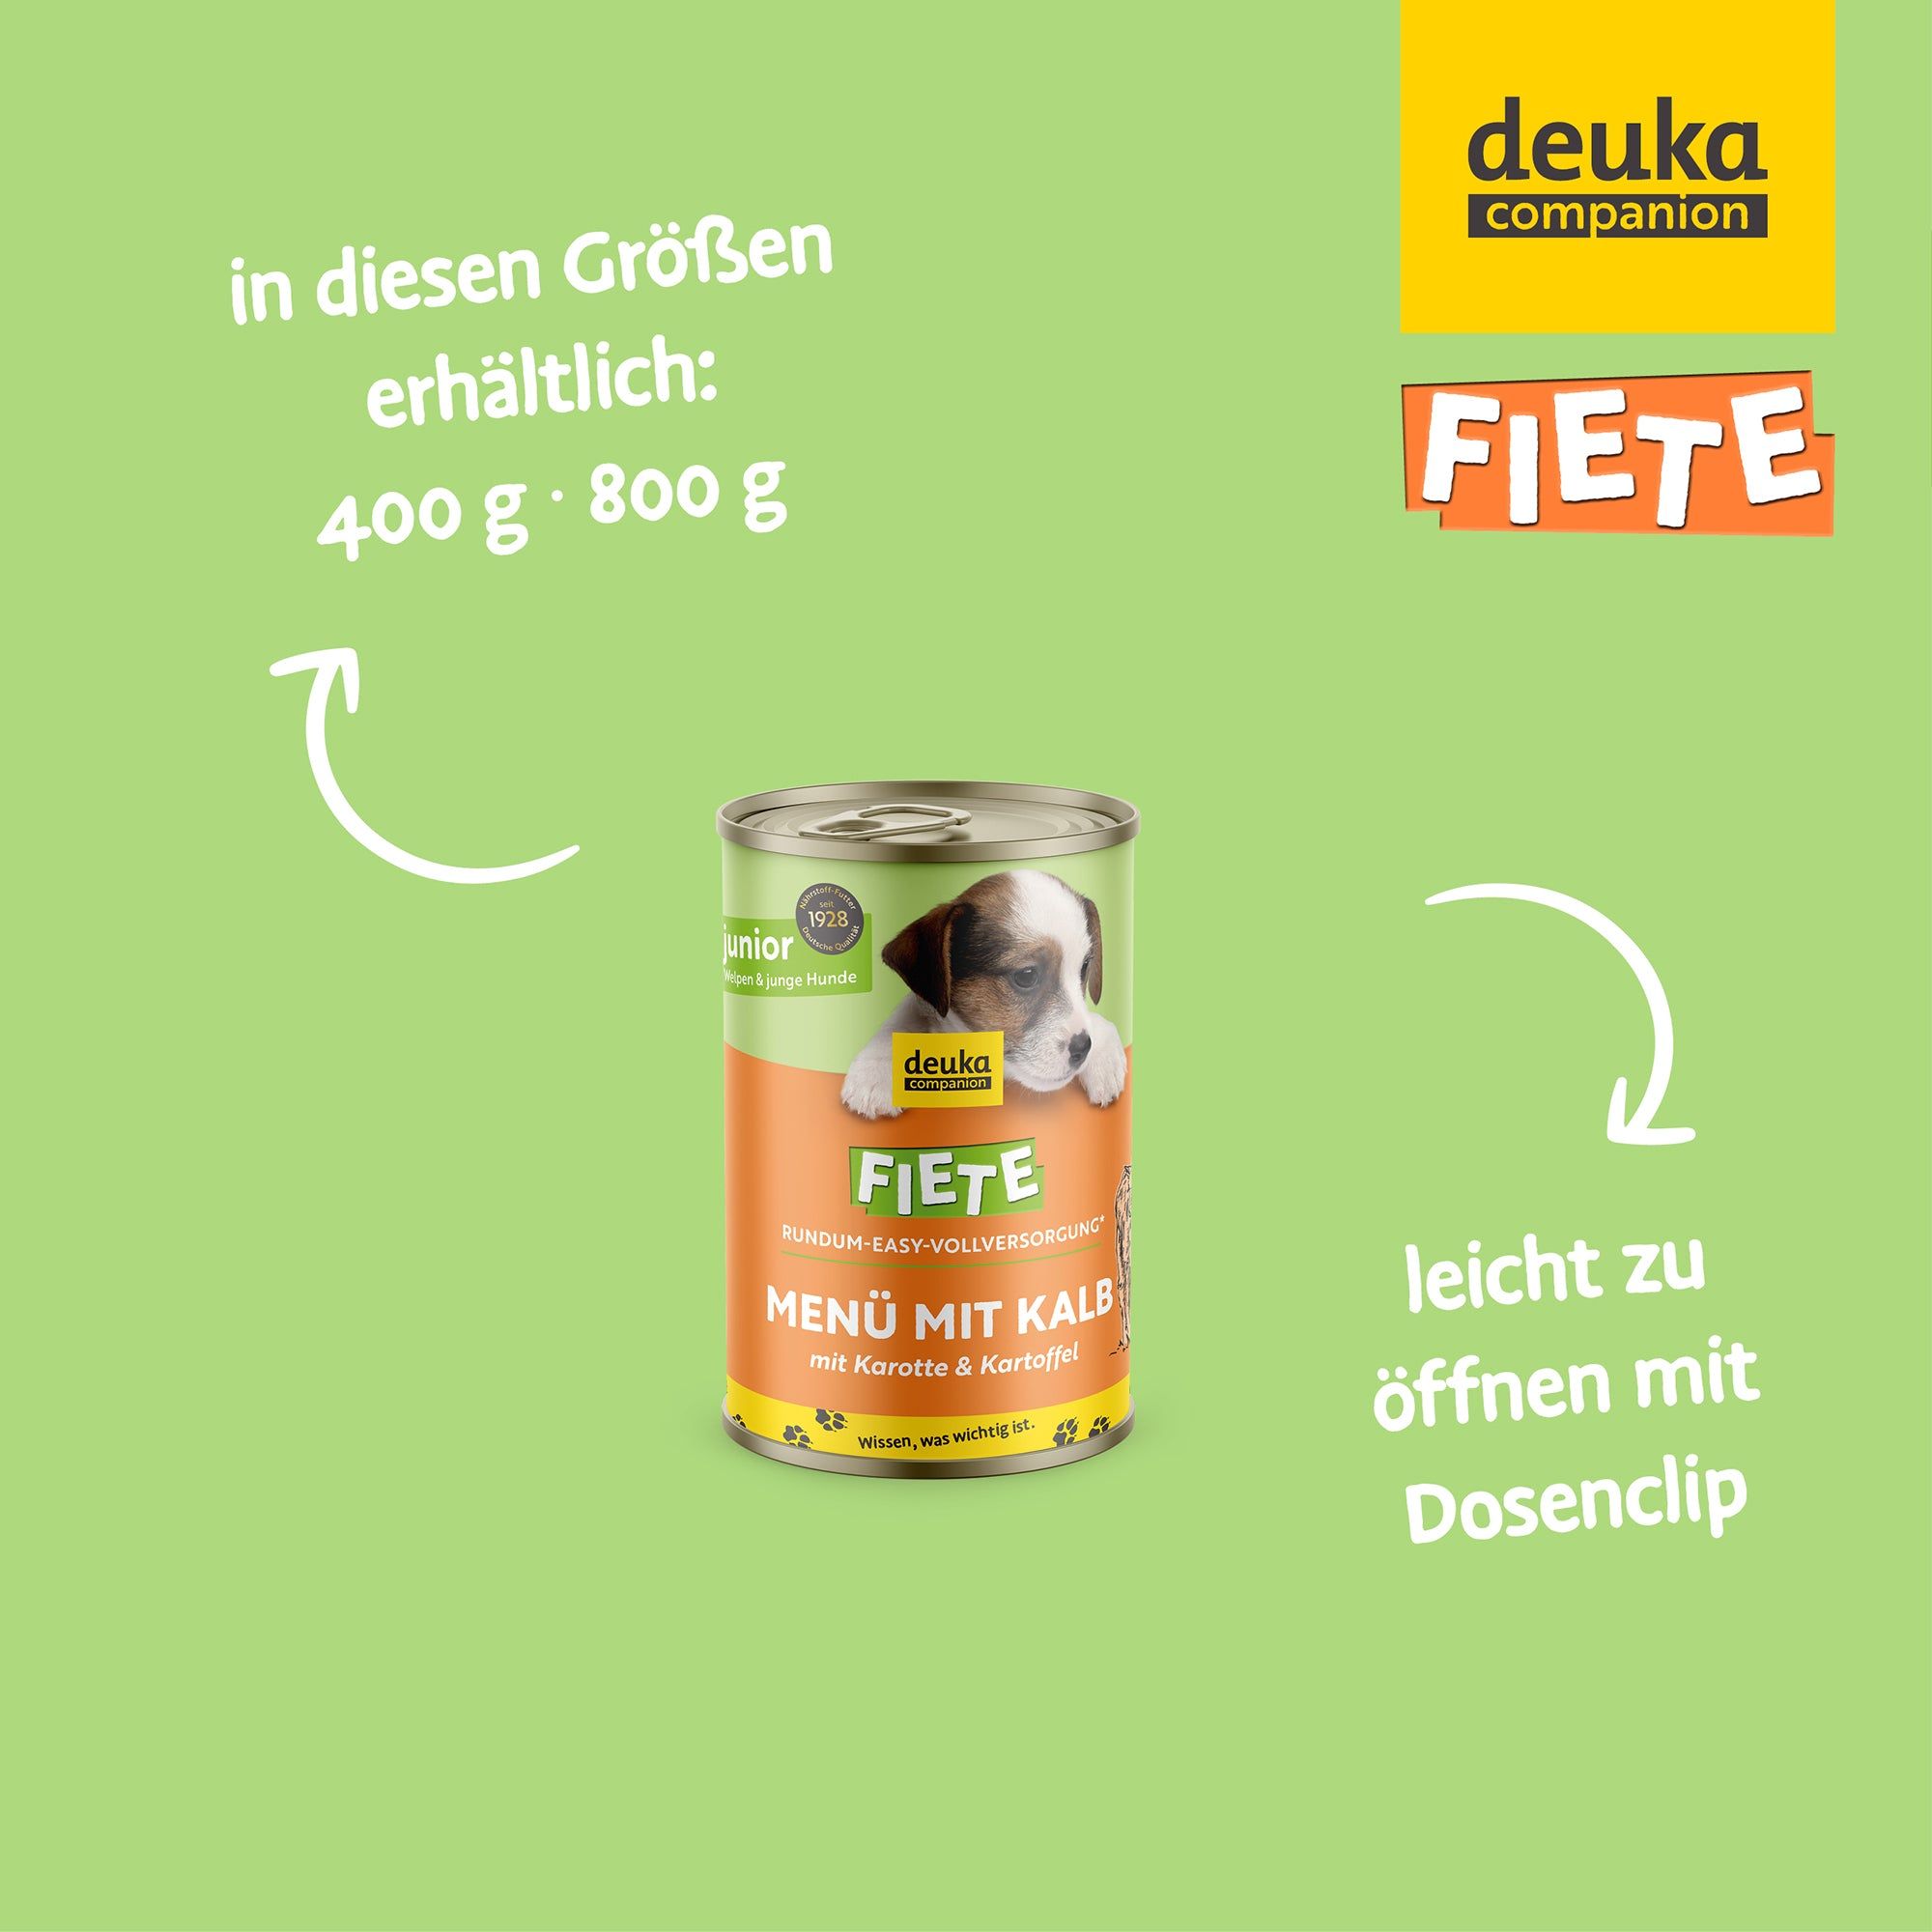 FIETE Junior Menü mit Kalb, Karotte und Kartoffel - Nassfutter für Welpen